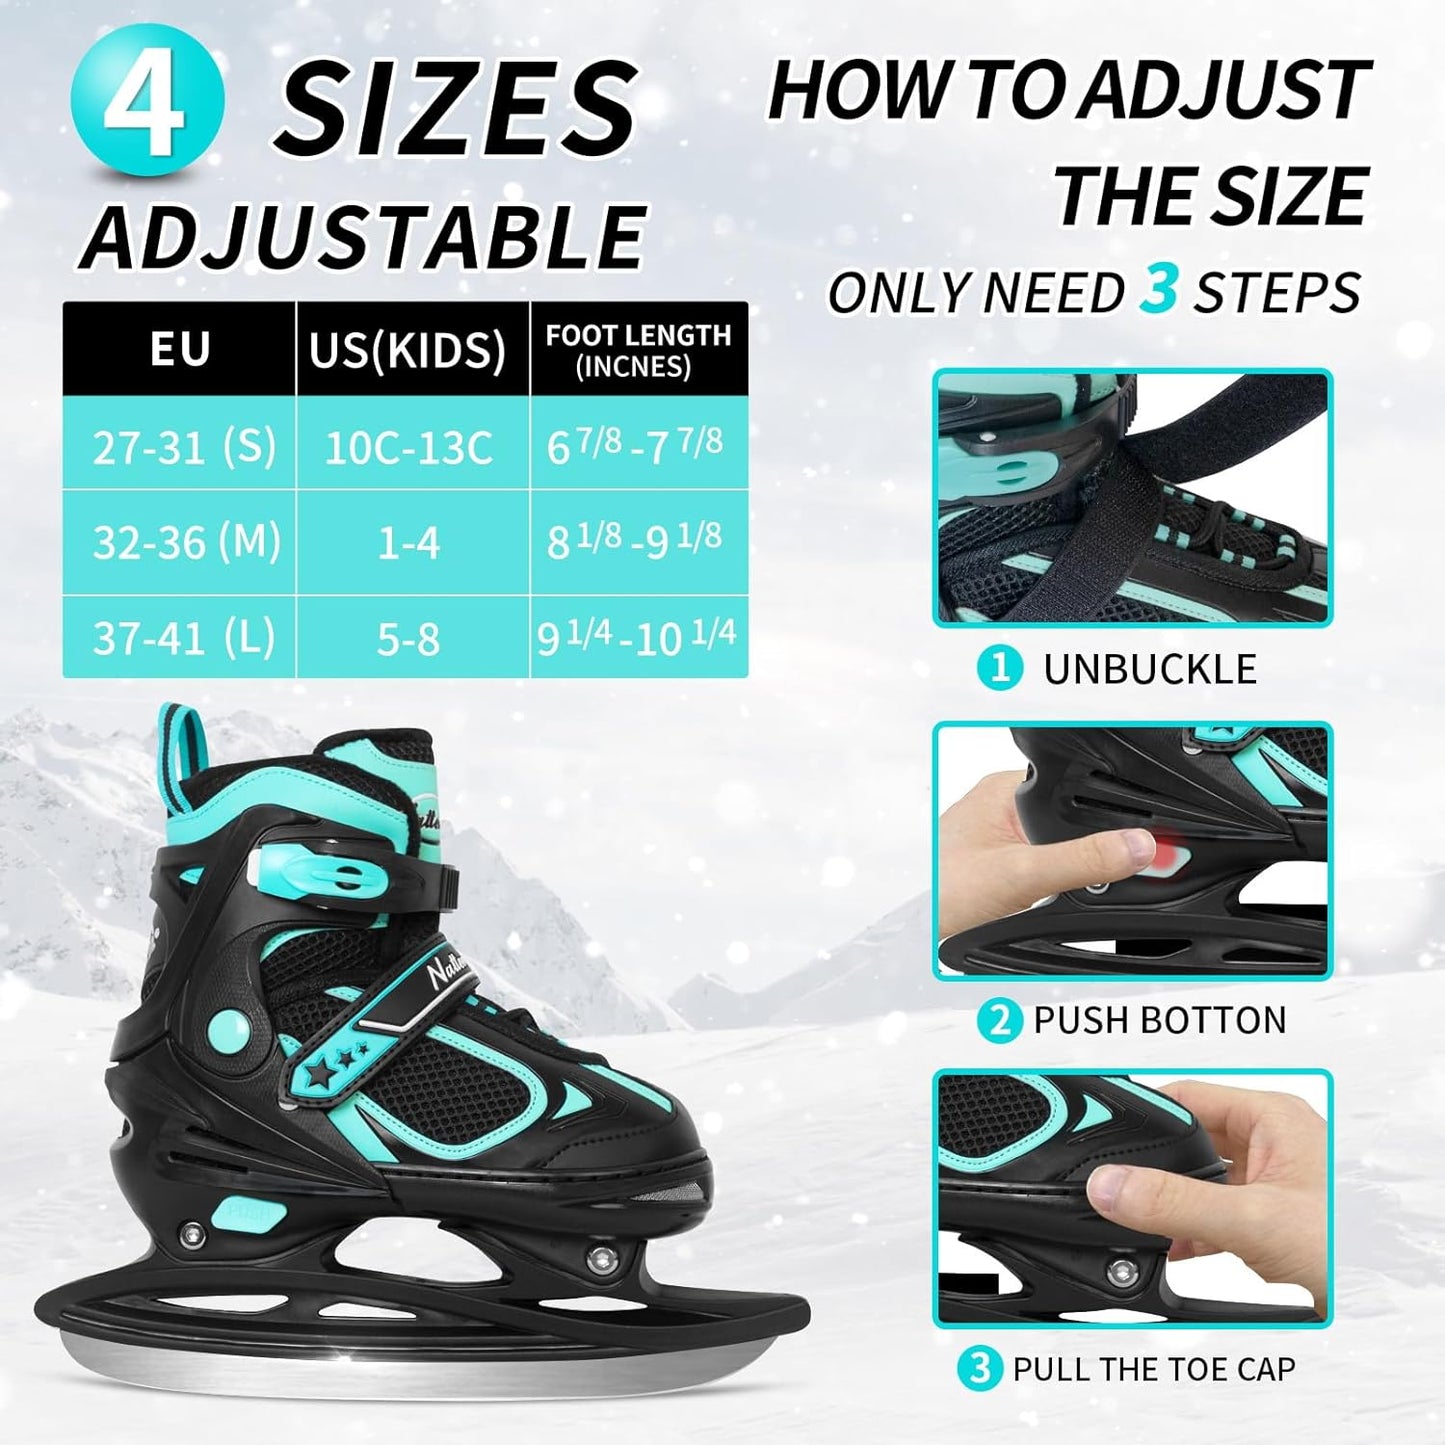 Nattork Adjustable Ice Skates - Teal